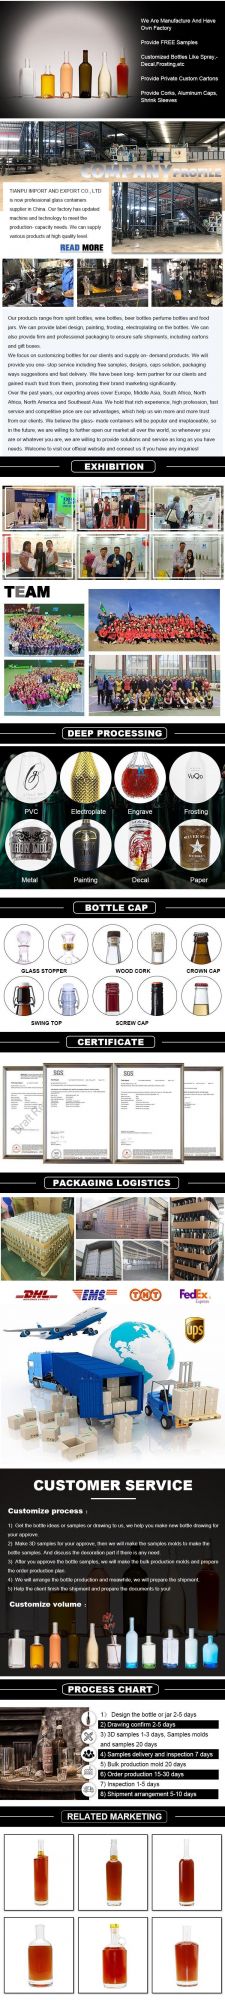 Glass Liquor/Wine/Vodka Bottle Manufacturers Custom Logo 375ml Glass Whiskey Bottle Glass Water Bottle